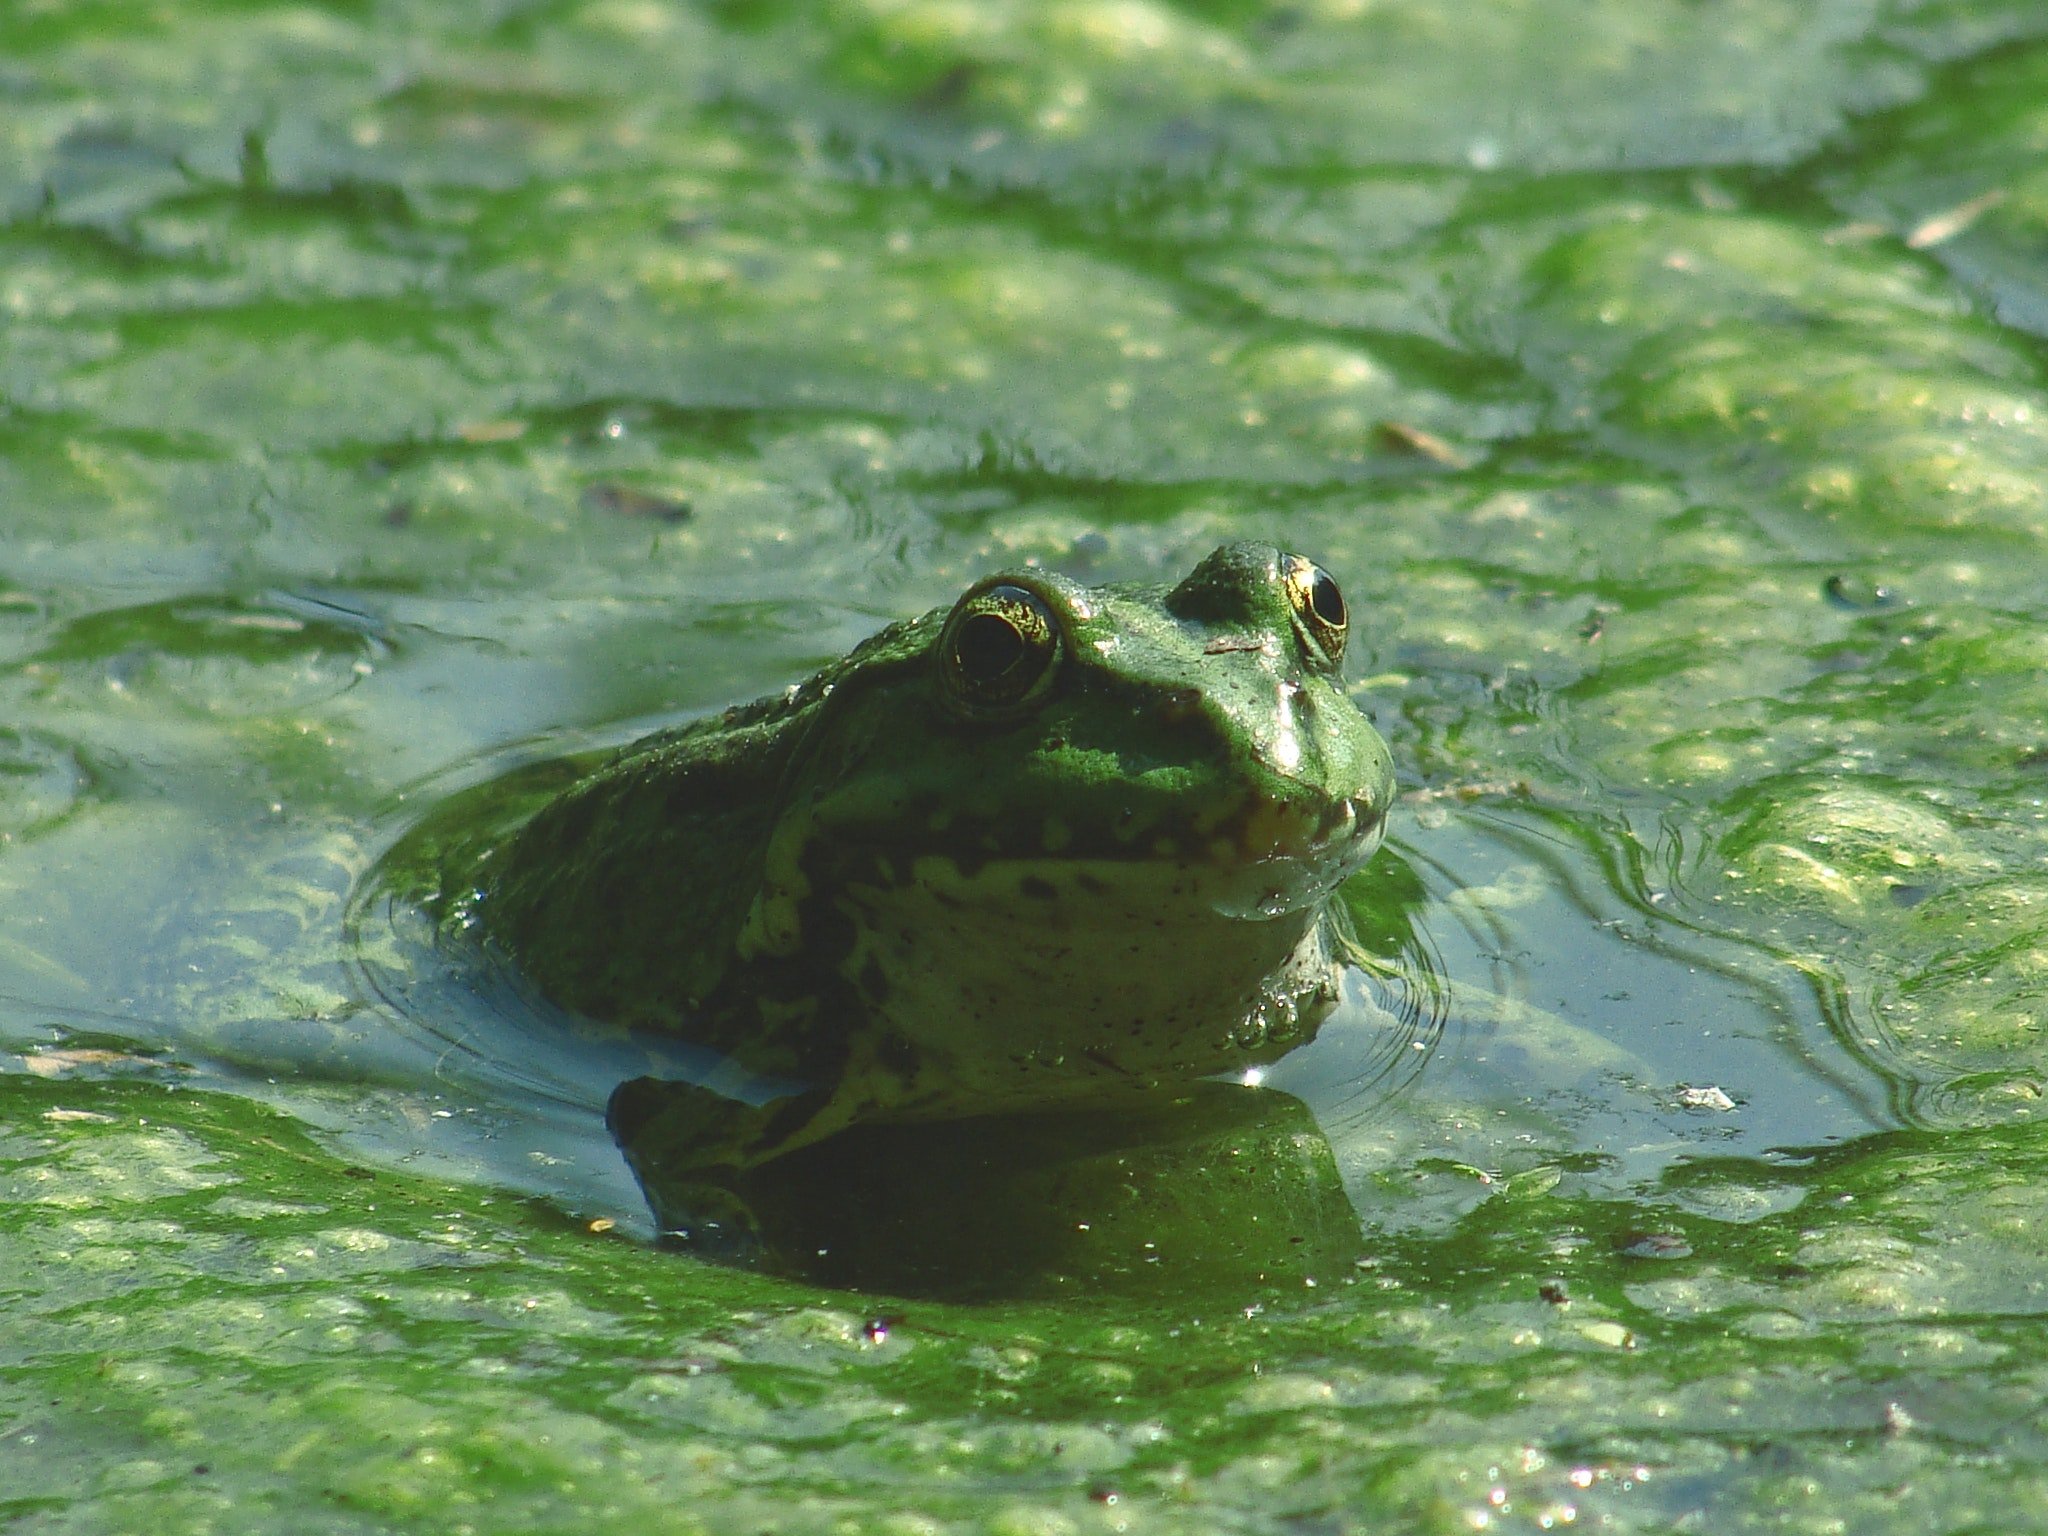 Elephant frog. Головастик Озерной лягушки. Головастик Болотной лягушки. Лягушка Озерная и Прудовая. Гвианская водяная жаба.